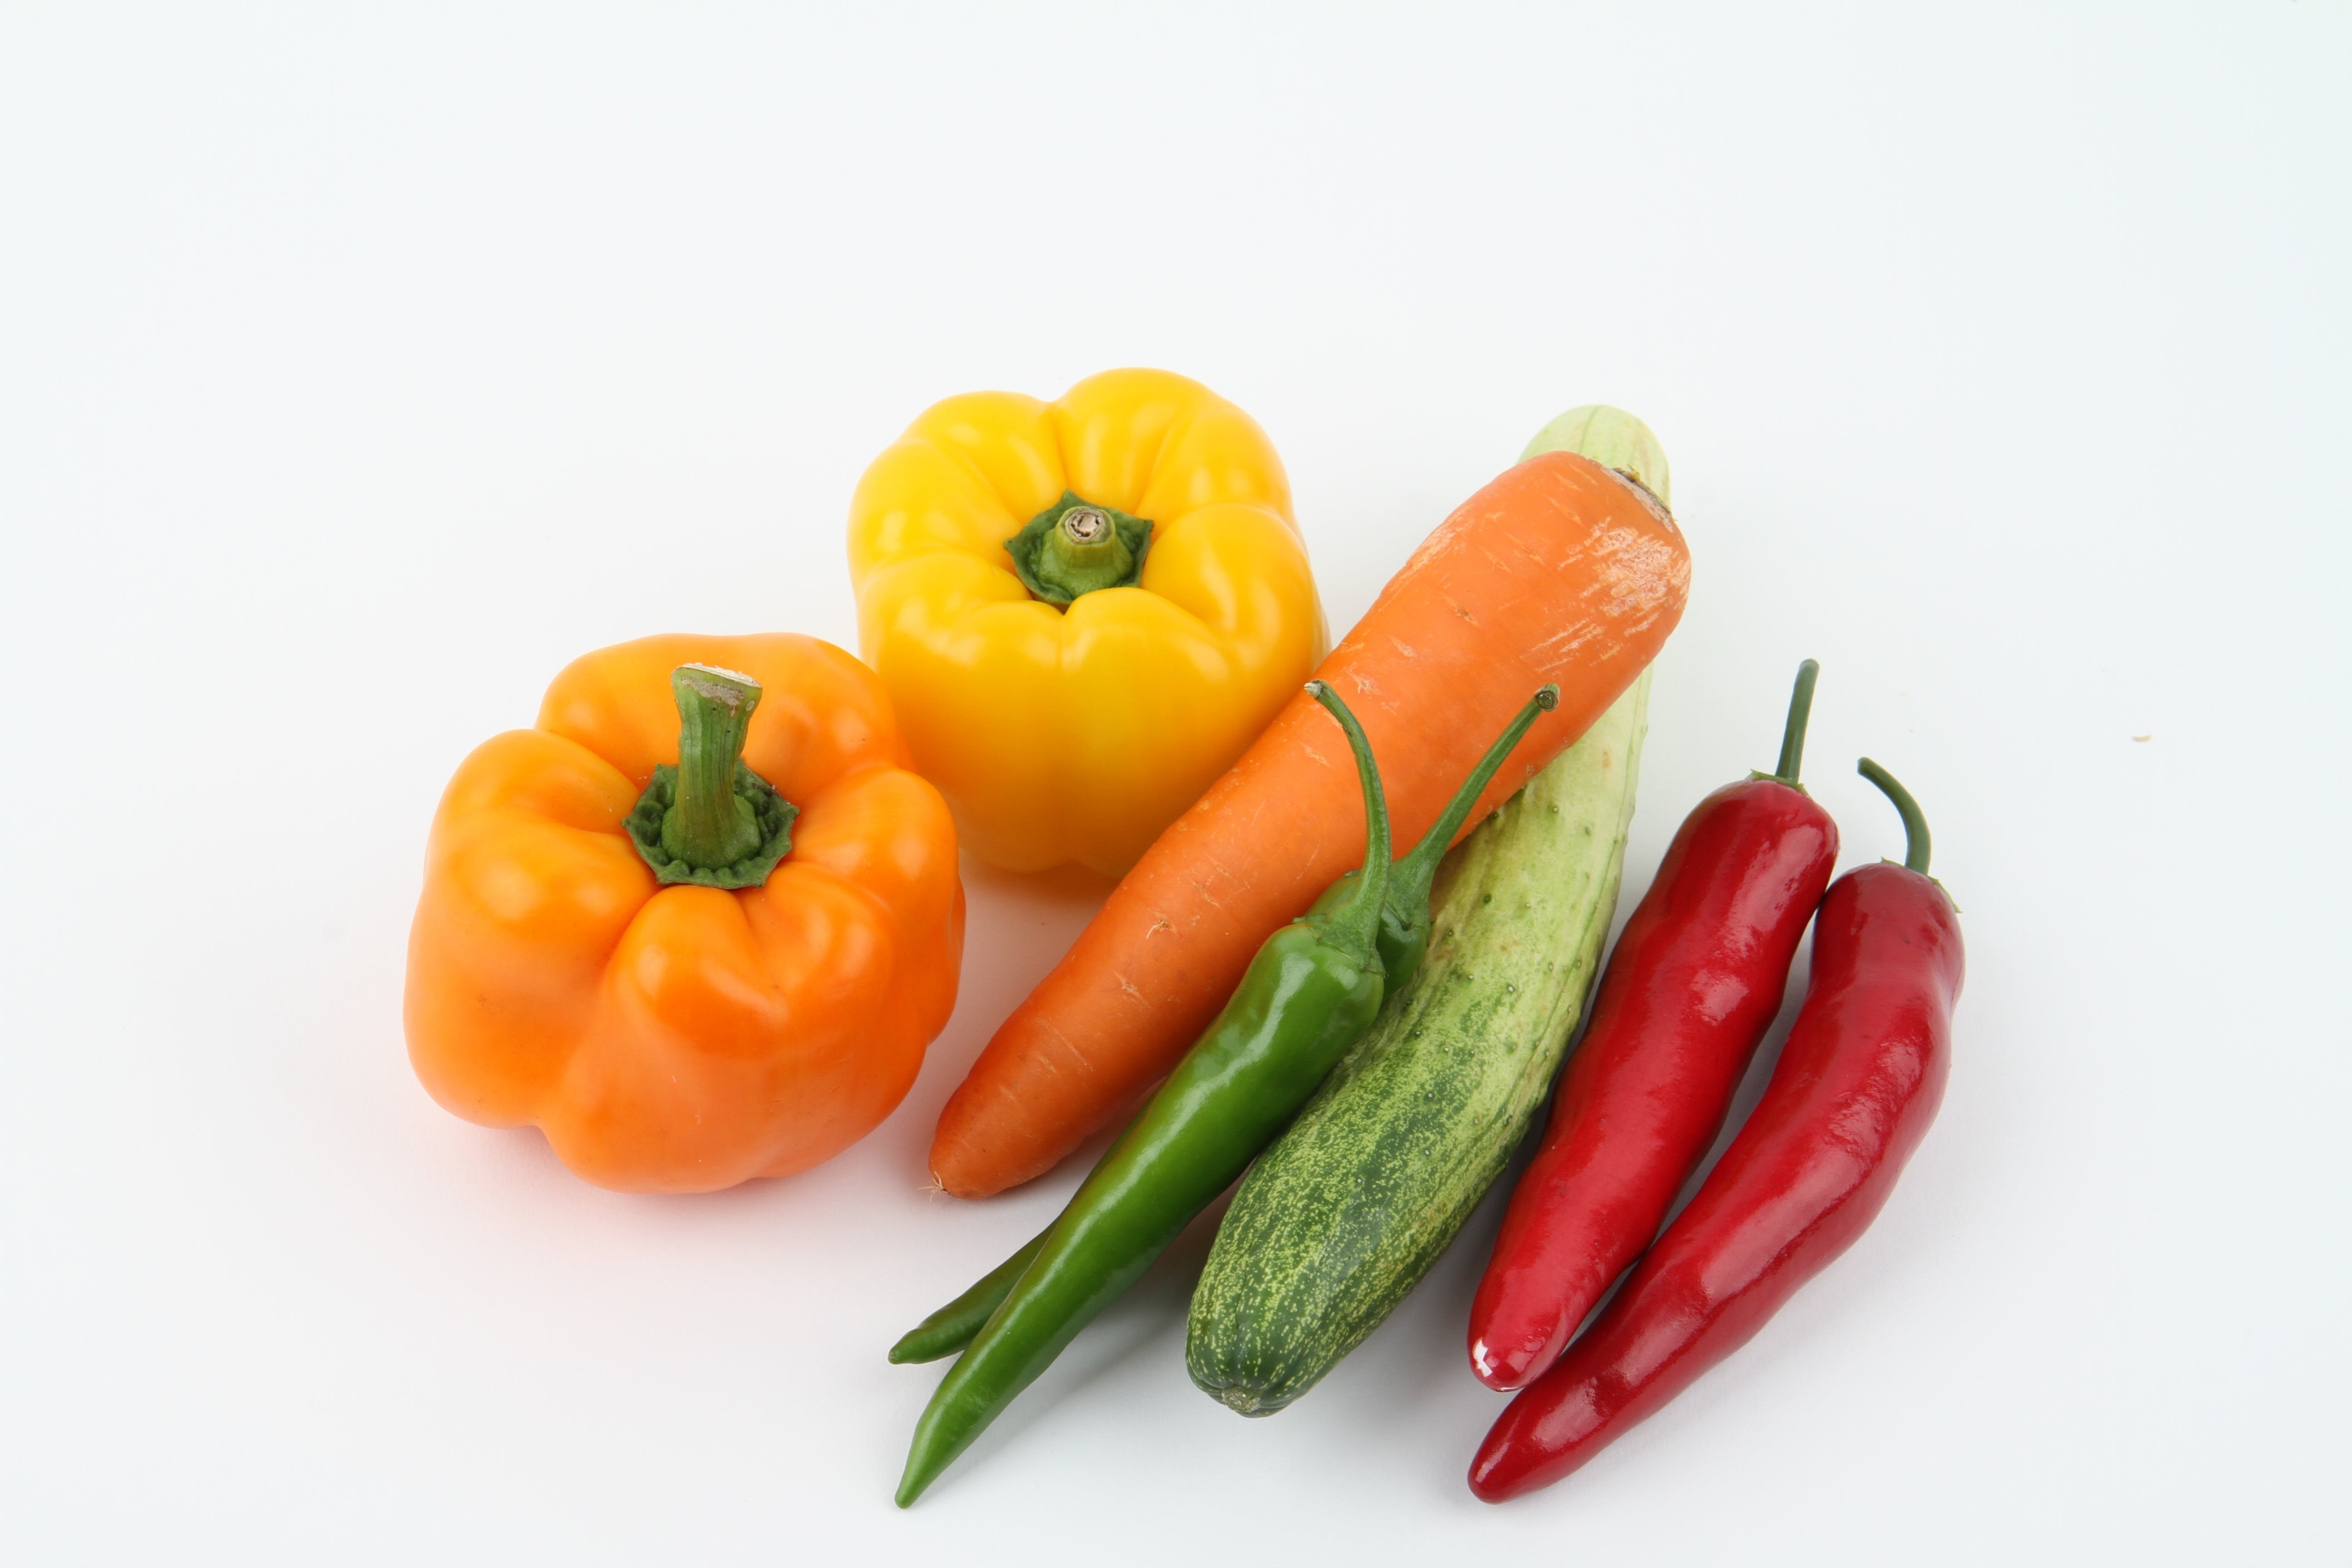 Картинка овощей по отдельности. Овощи. Овощи и фрукты. Овощи по отдельности. Овощи на белом фоне.